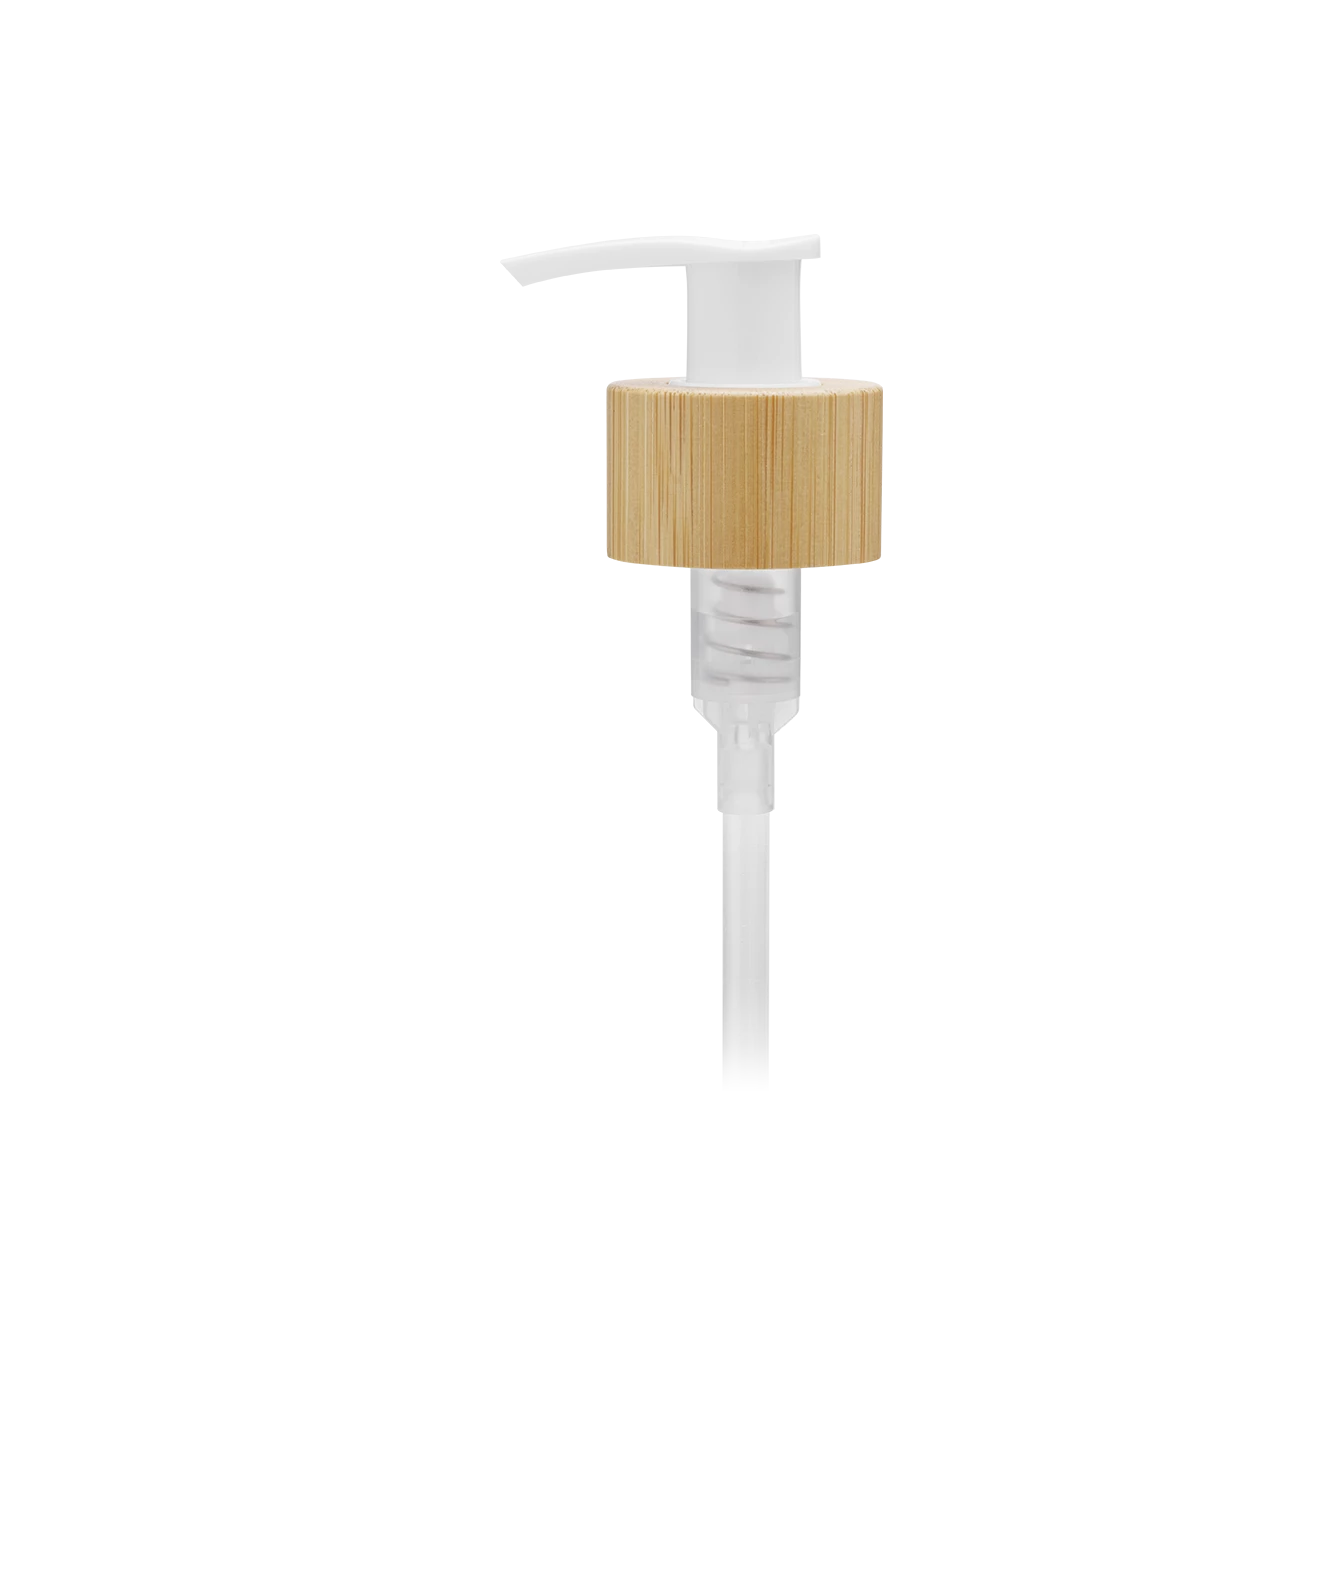 dispensergpibamboo-verschlusse-zubehoor-vetroelite-view1